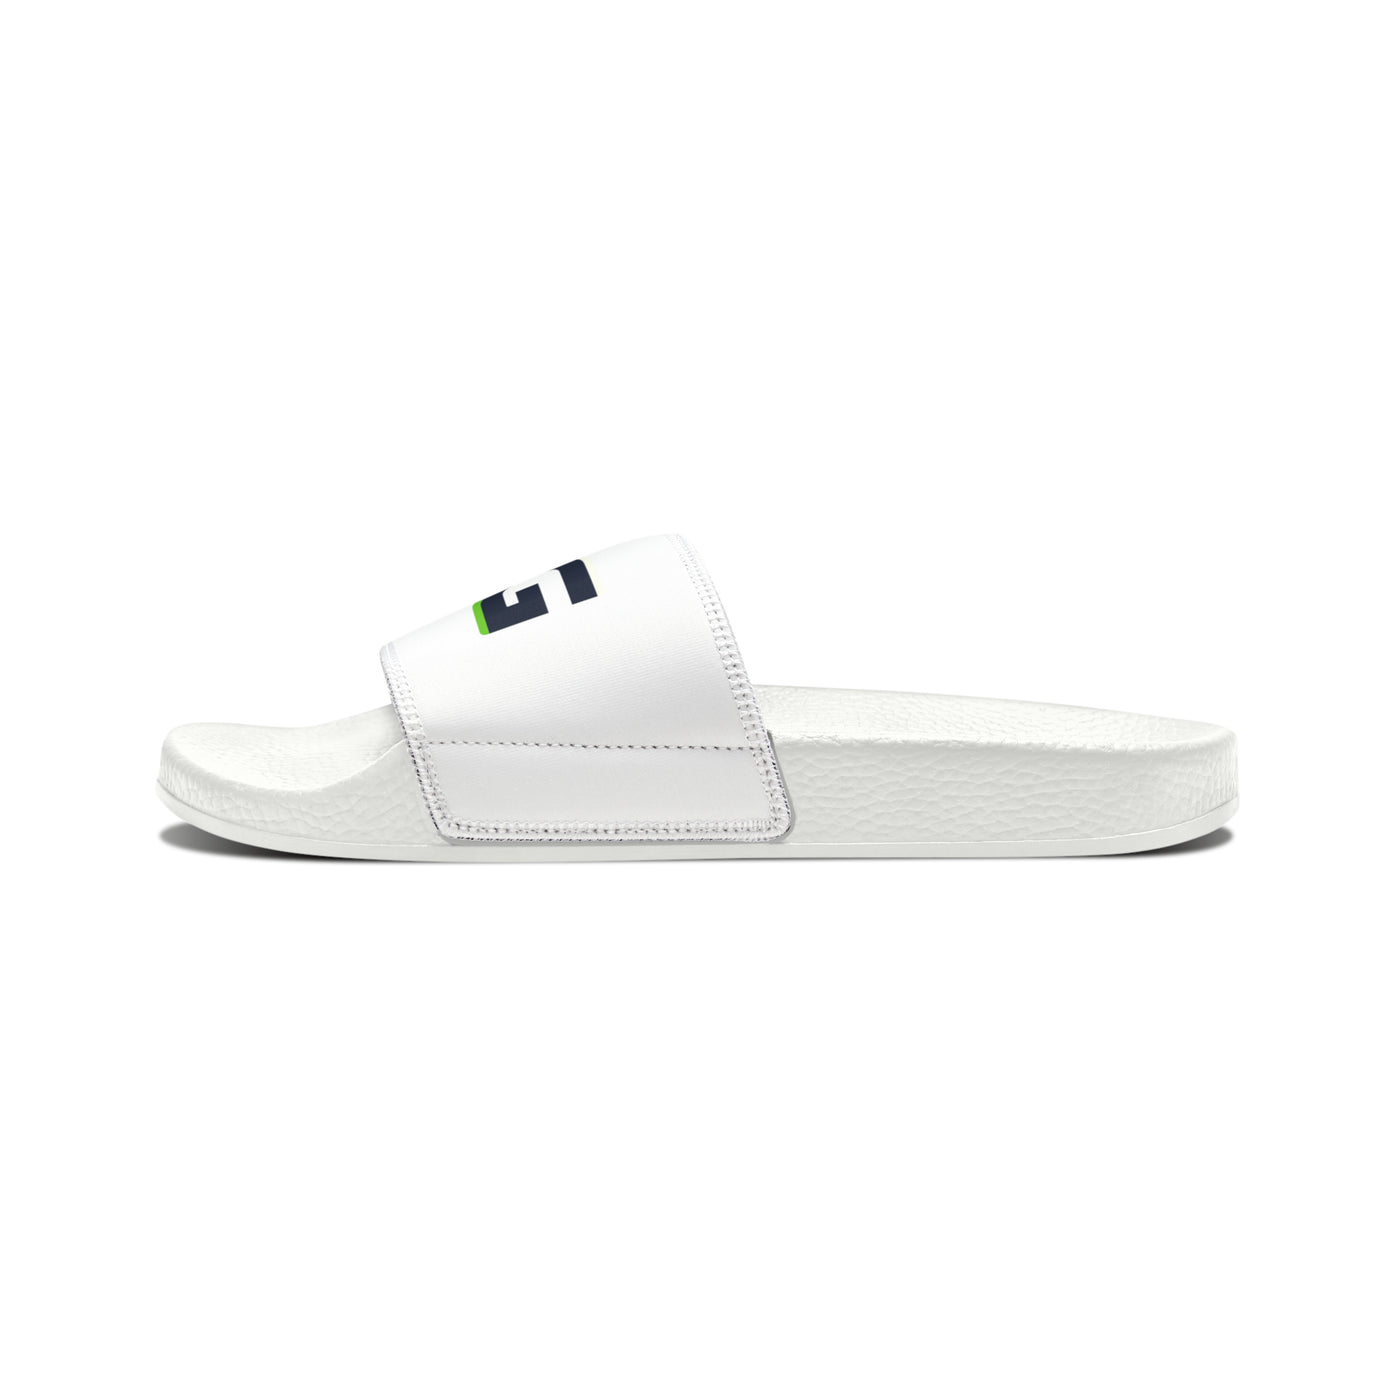 LGG Slide Sandals